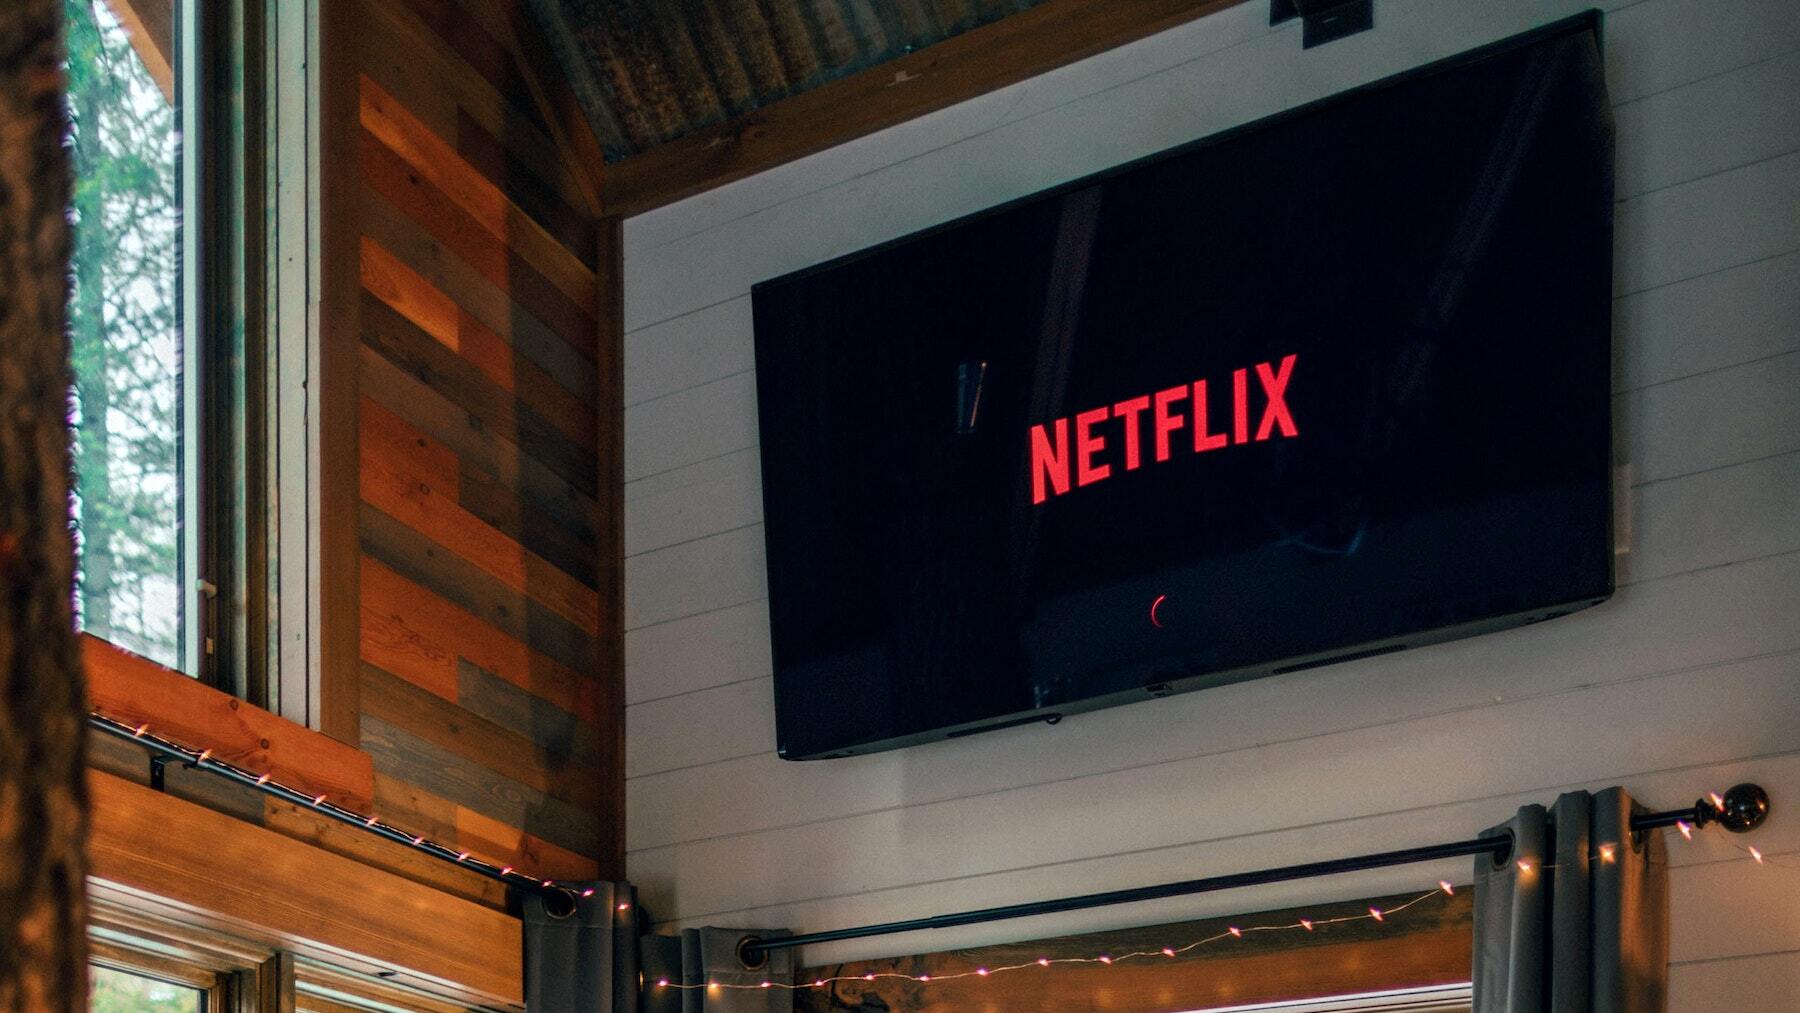 En Netflix ofrecen empleo casi millonario si eres experto en IA. Nadie sabe cuál es su propósito